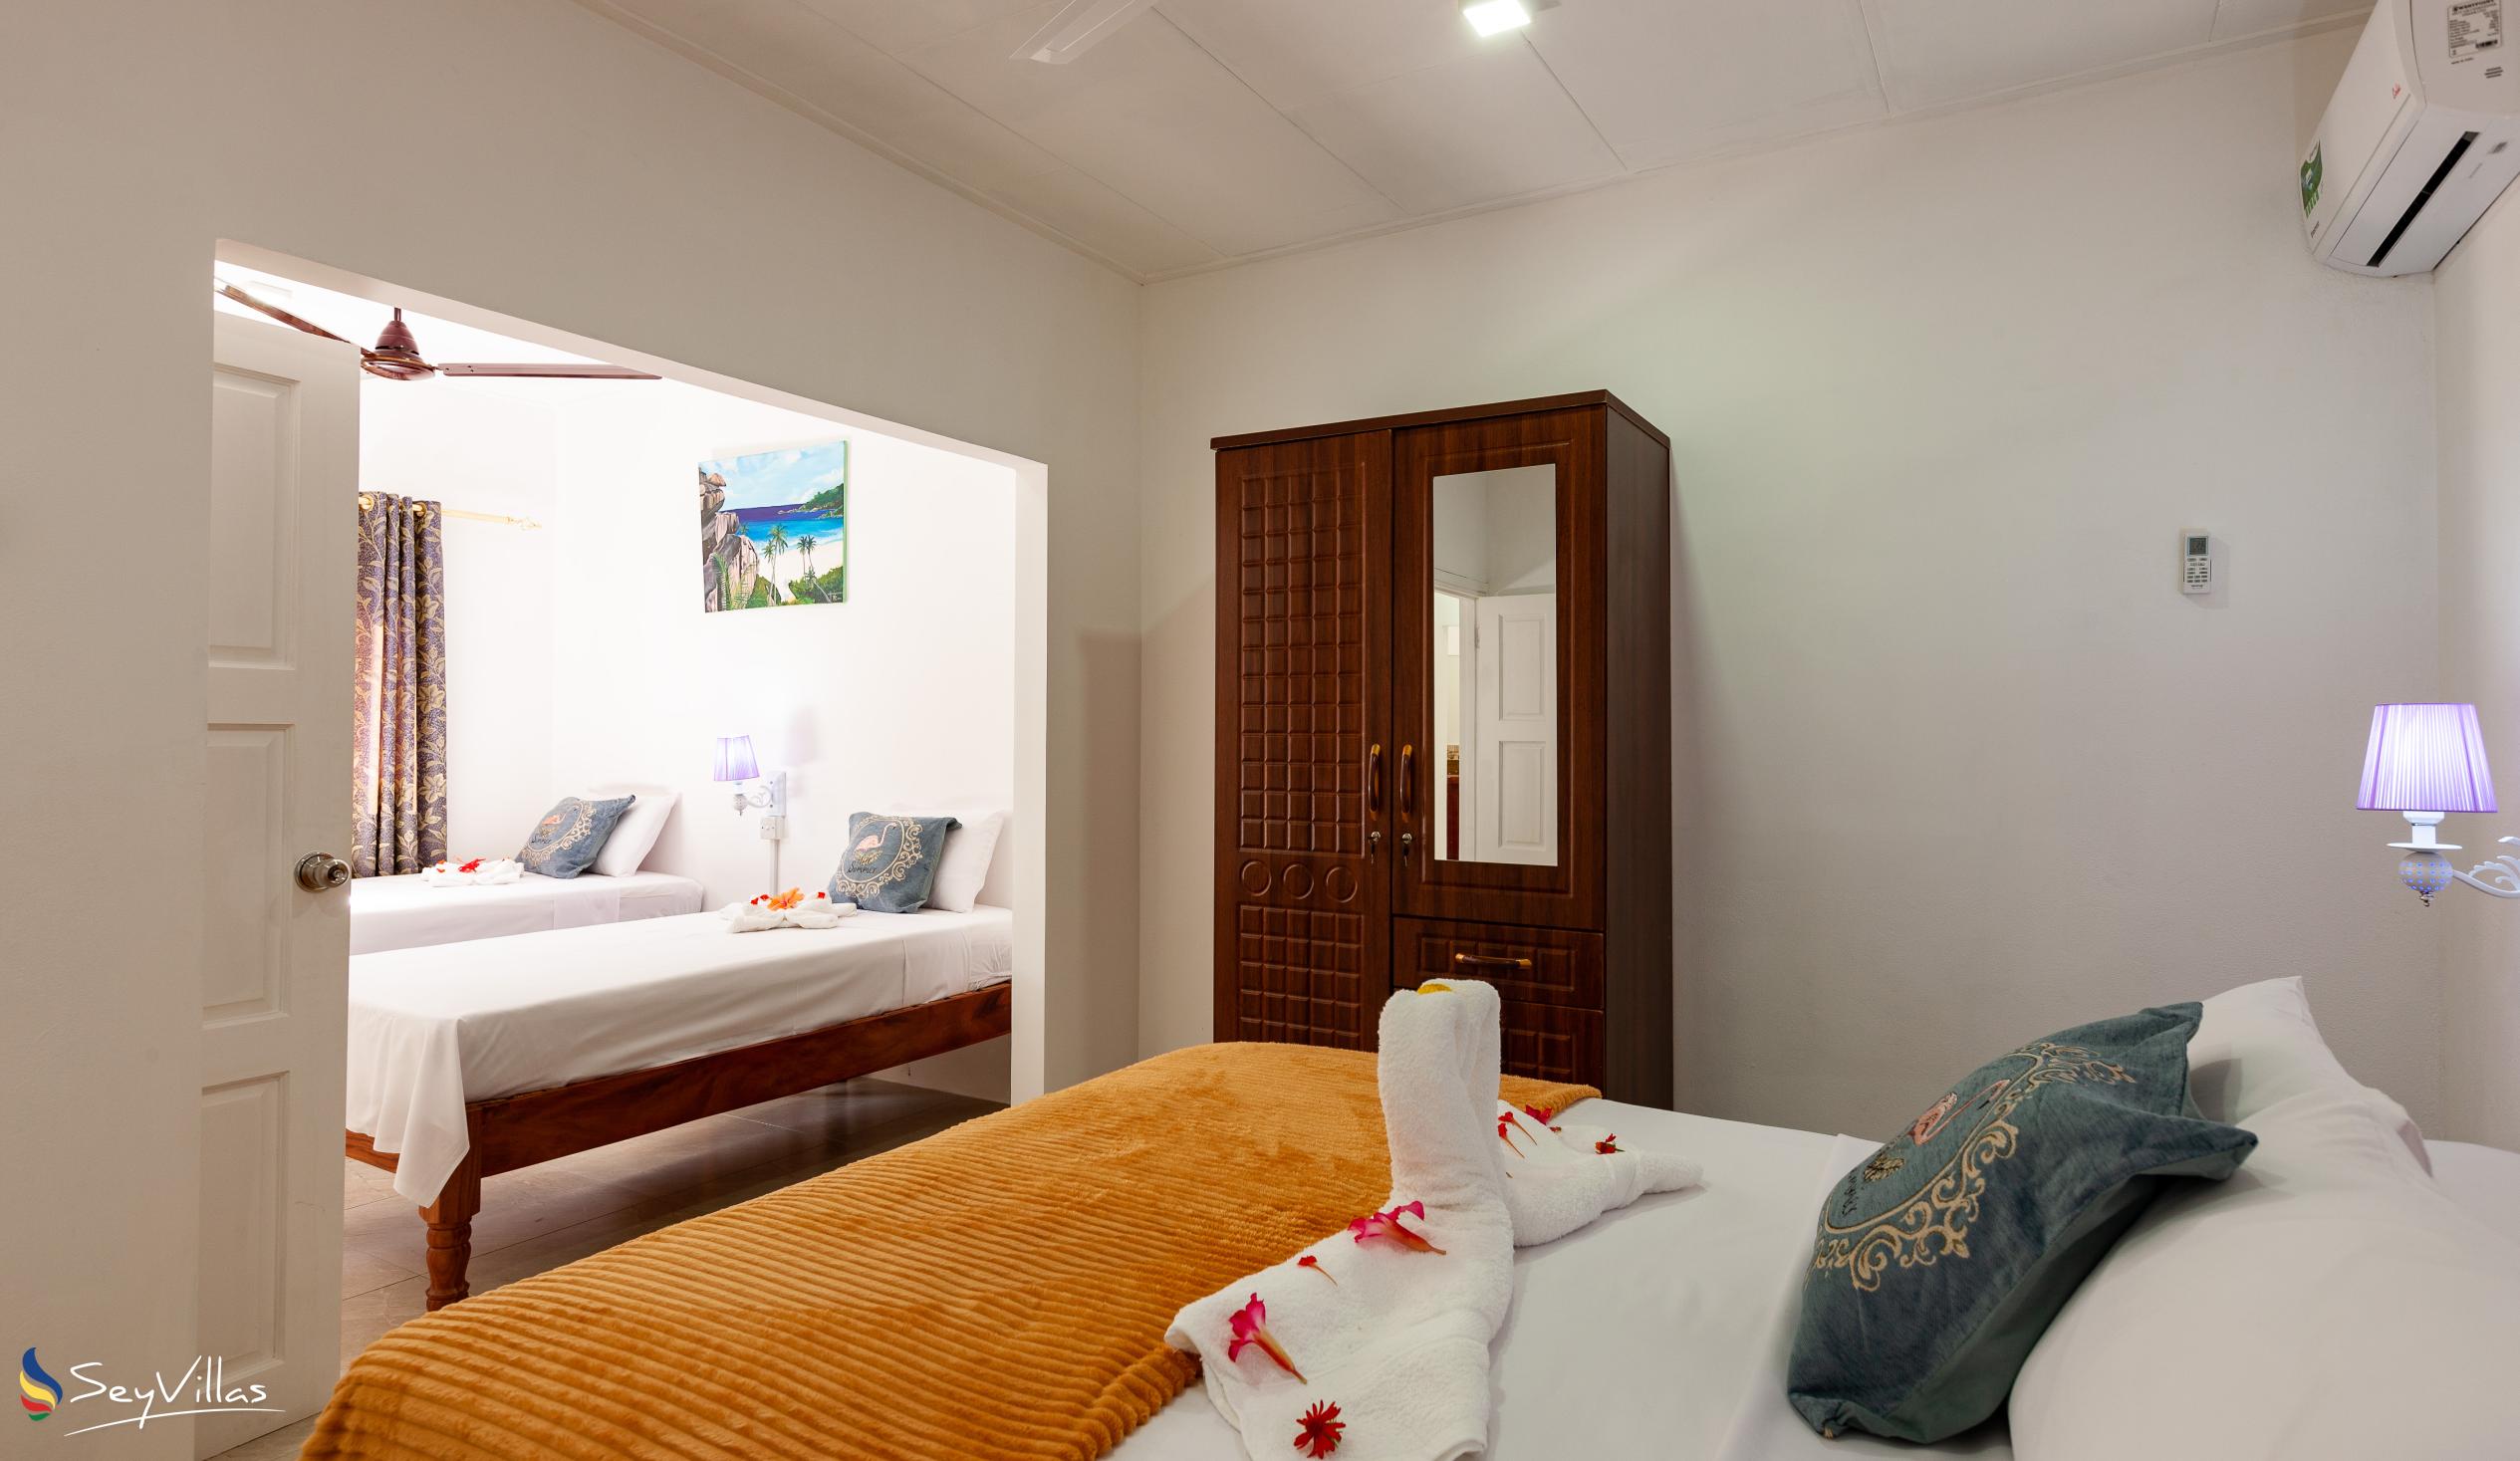 Foto 53: Anse Grosse Roche Beach Villa - Appartamento Familiare con 2 camere da letto - La Digue (Seychelles)